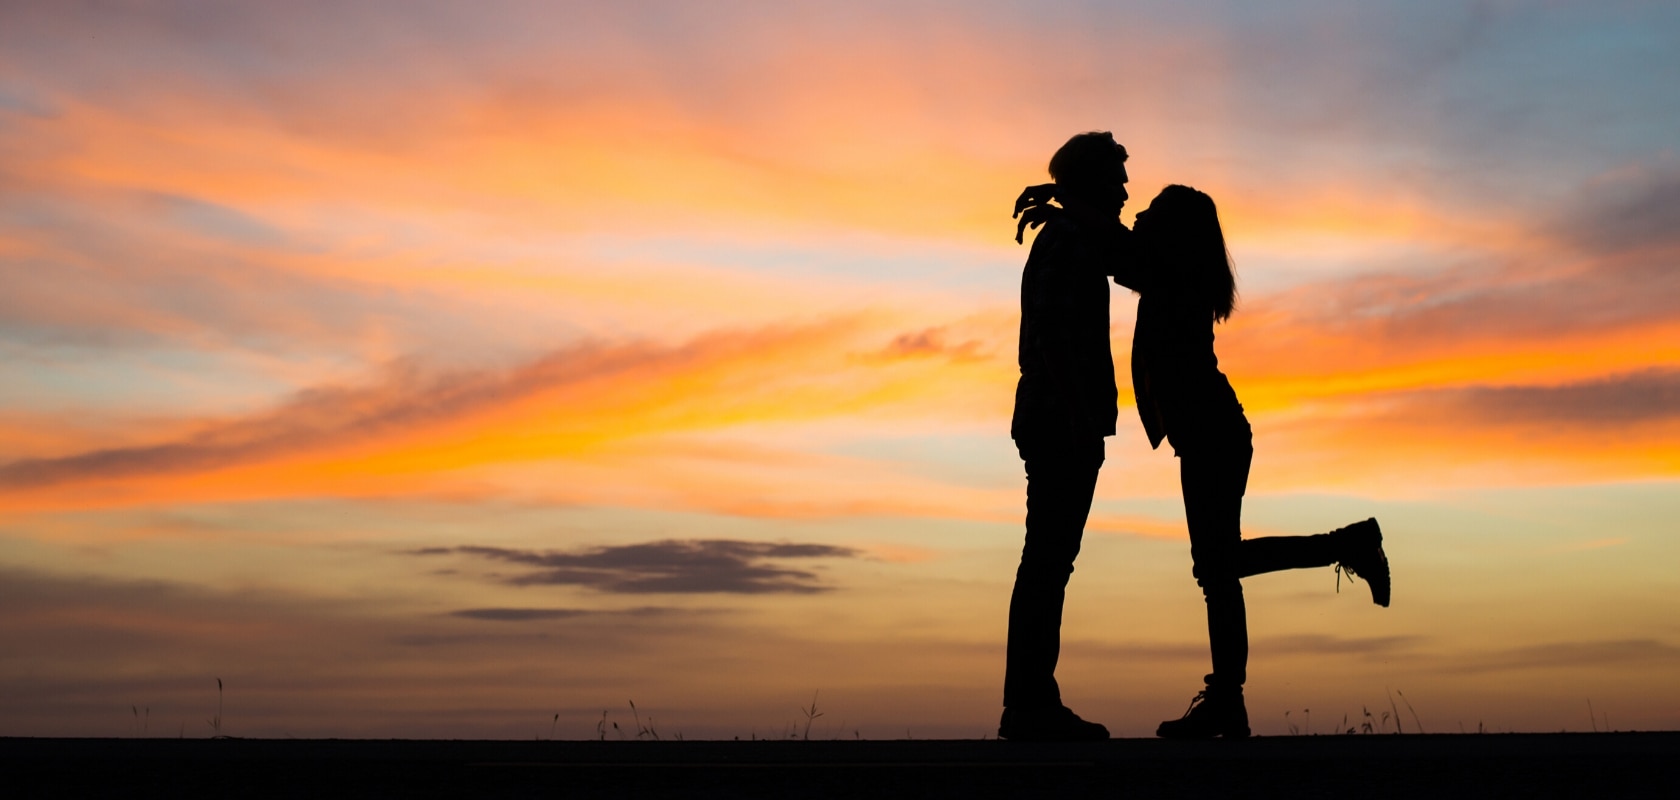 200 Preguntas para parejas - Preguntas para conocer mejor a tu pareja